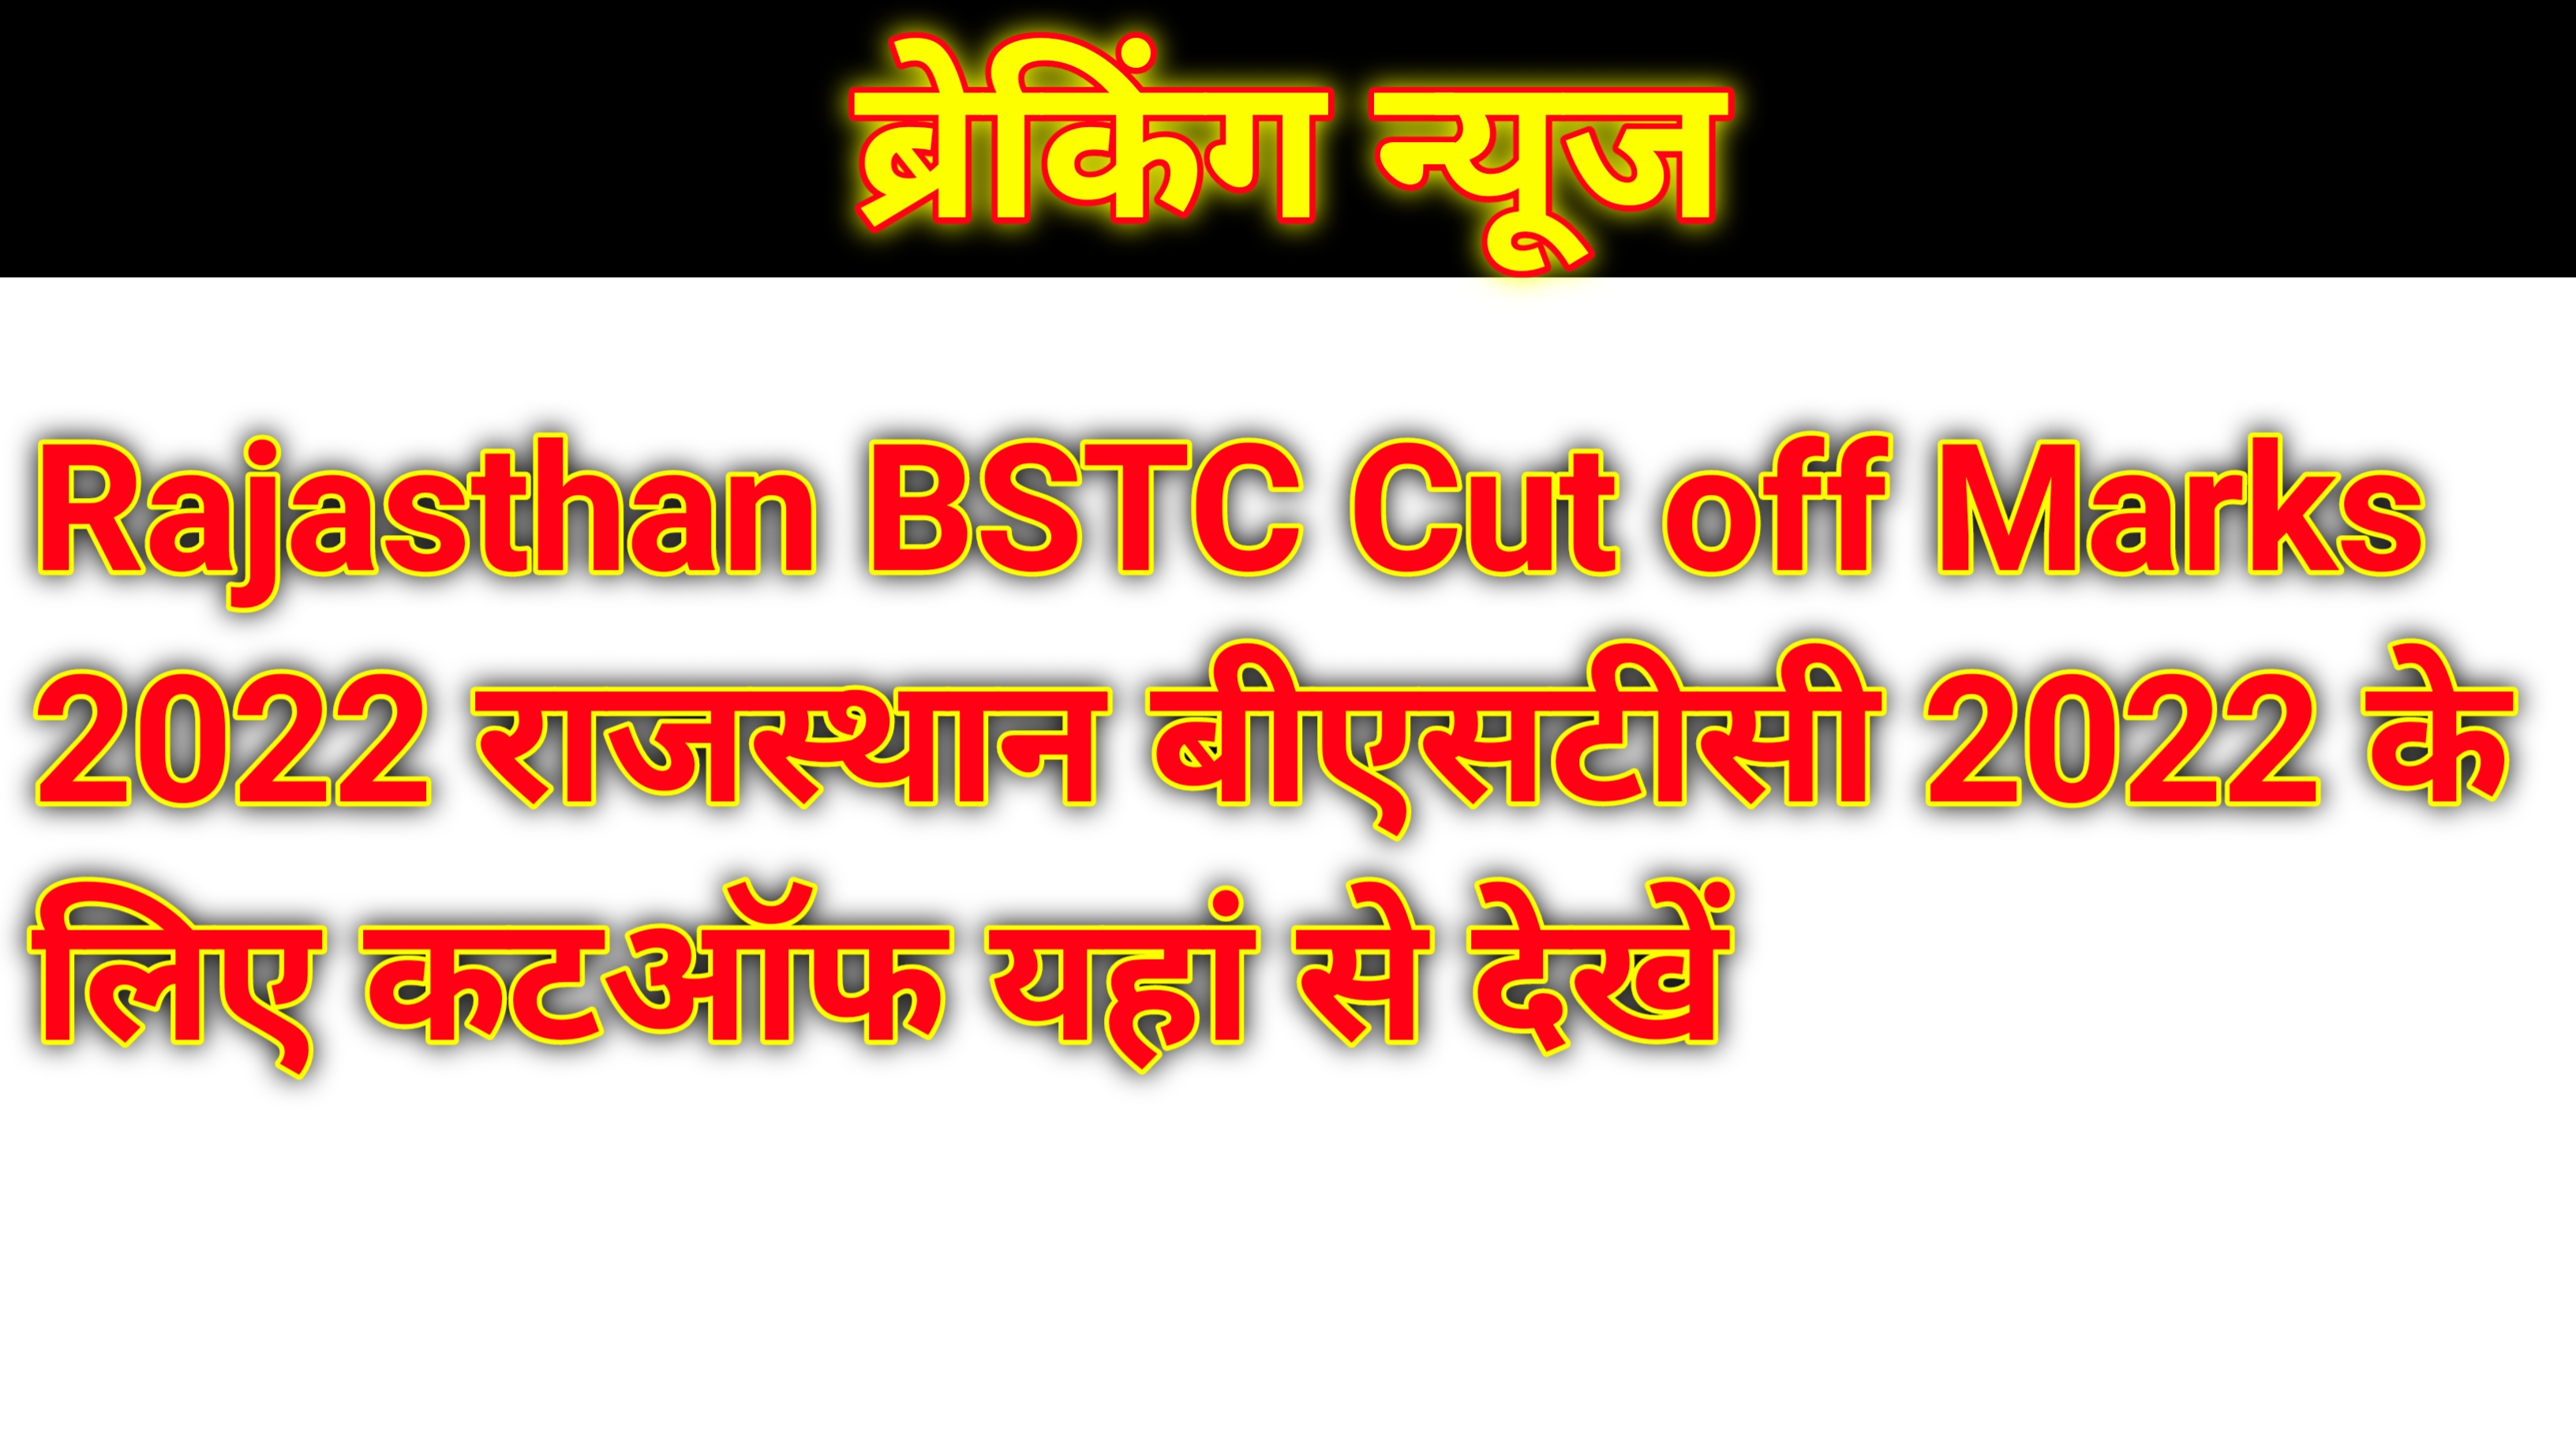 Rajasthan BSTC Cut off Marks 2022 राजस्थान बीएसटीसी 2022 के लिए कटऑफ यहां से देखें